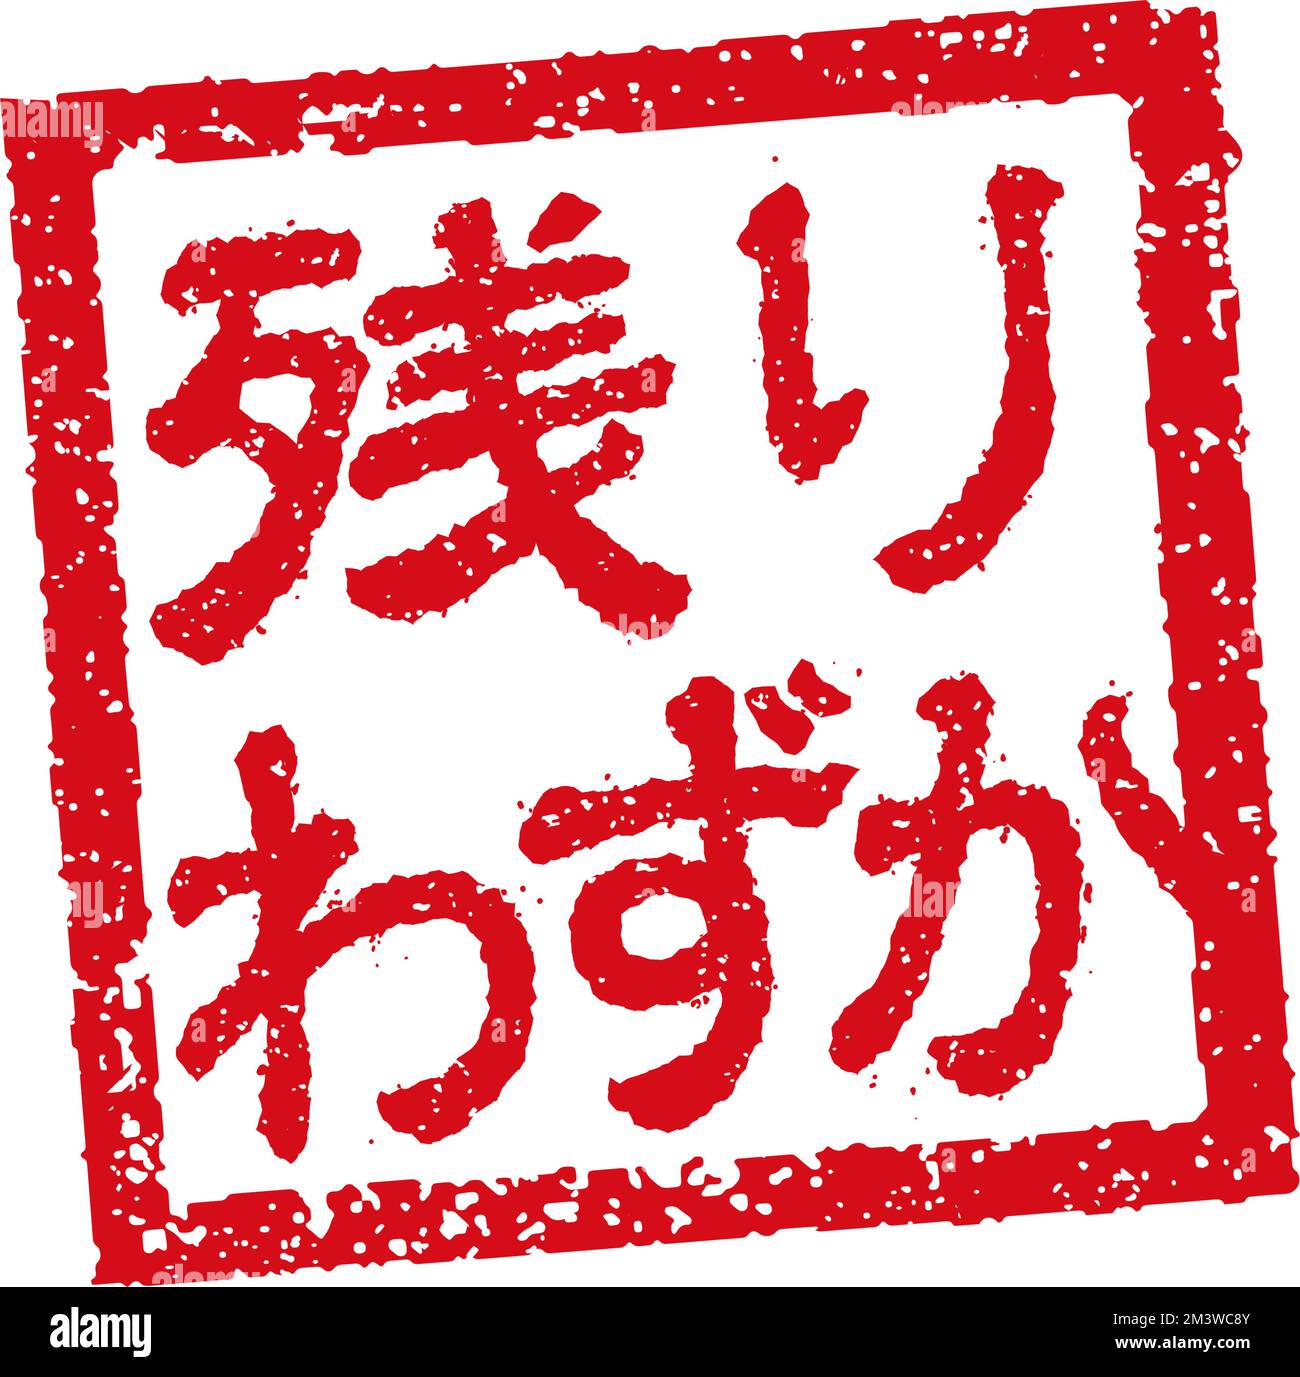 Abbildung von Gummistempeln, die häufig in japanischen Restaurants und Pubs verwendet wird. Usw. | begrenzter Lagerbestand Stock Vektor